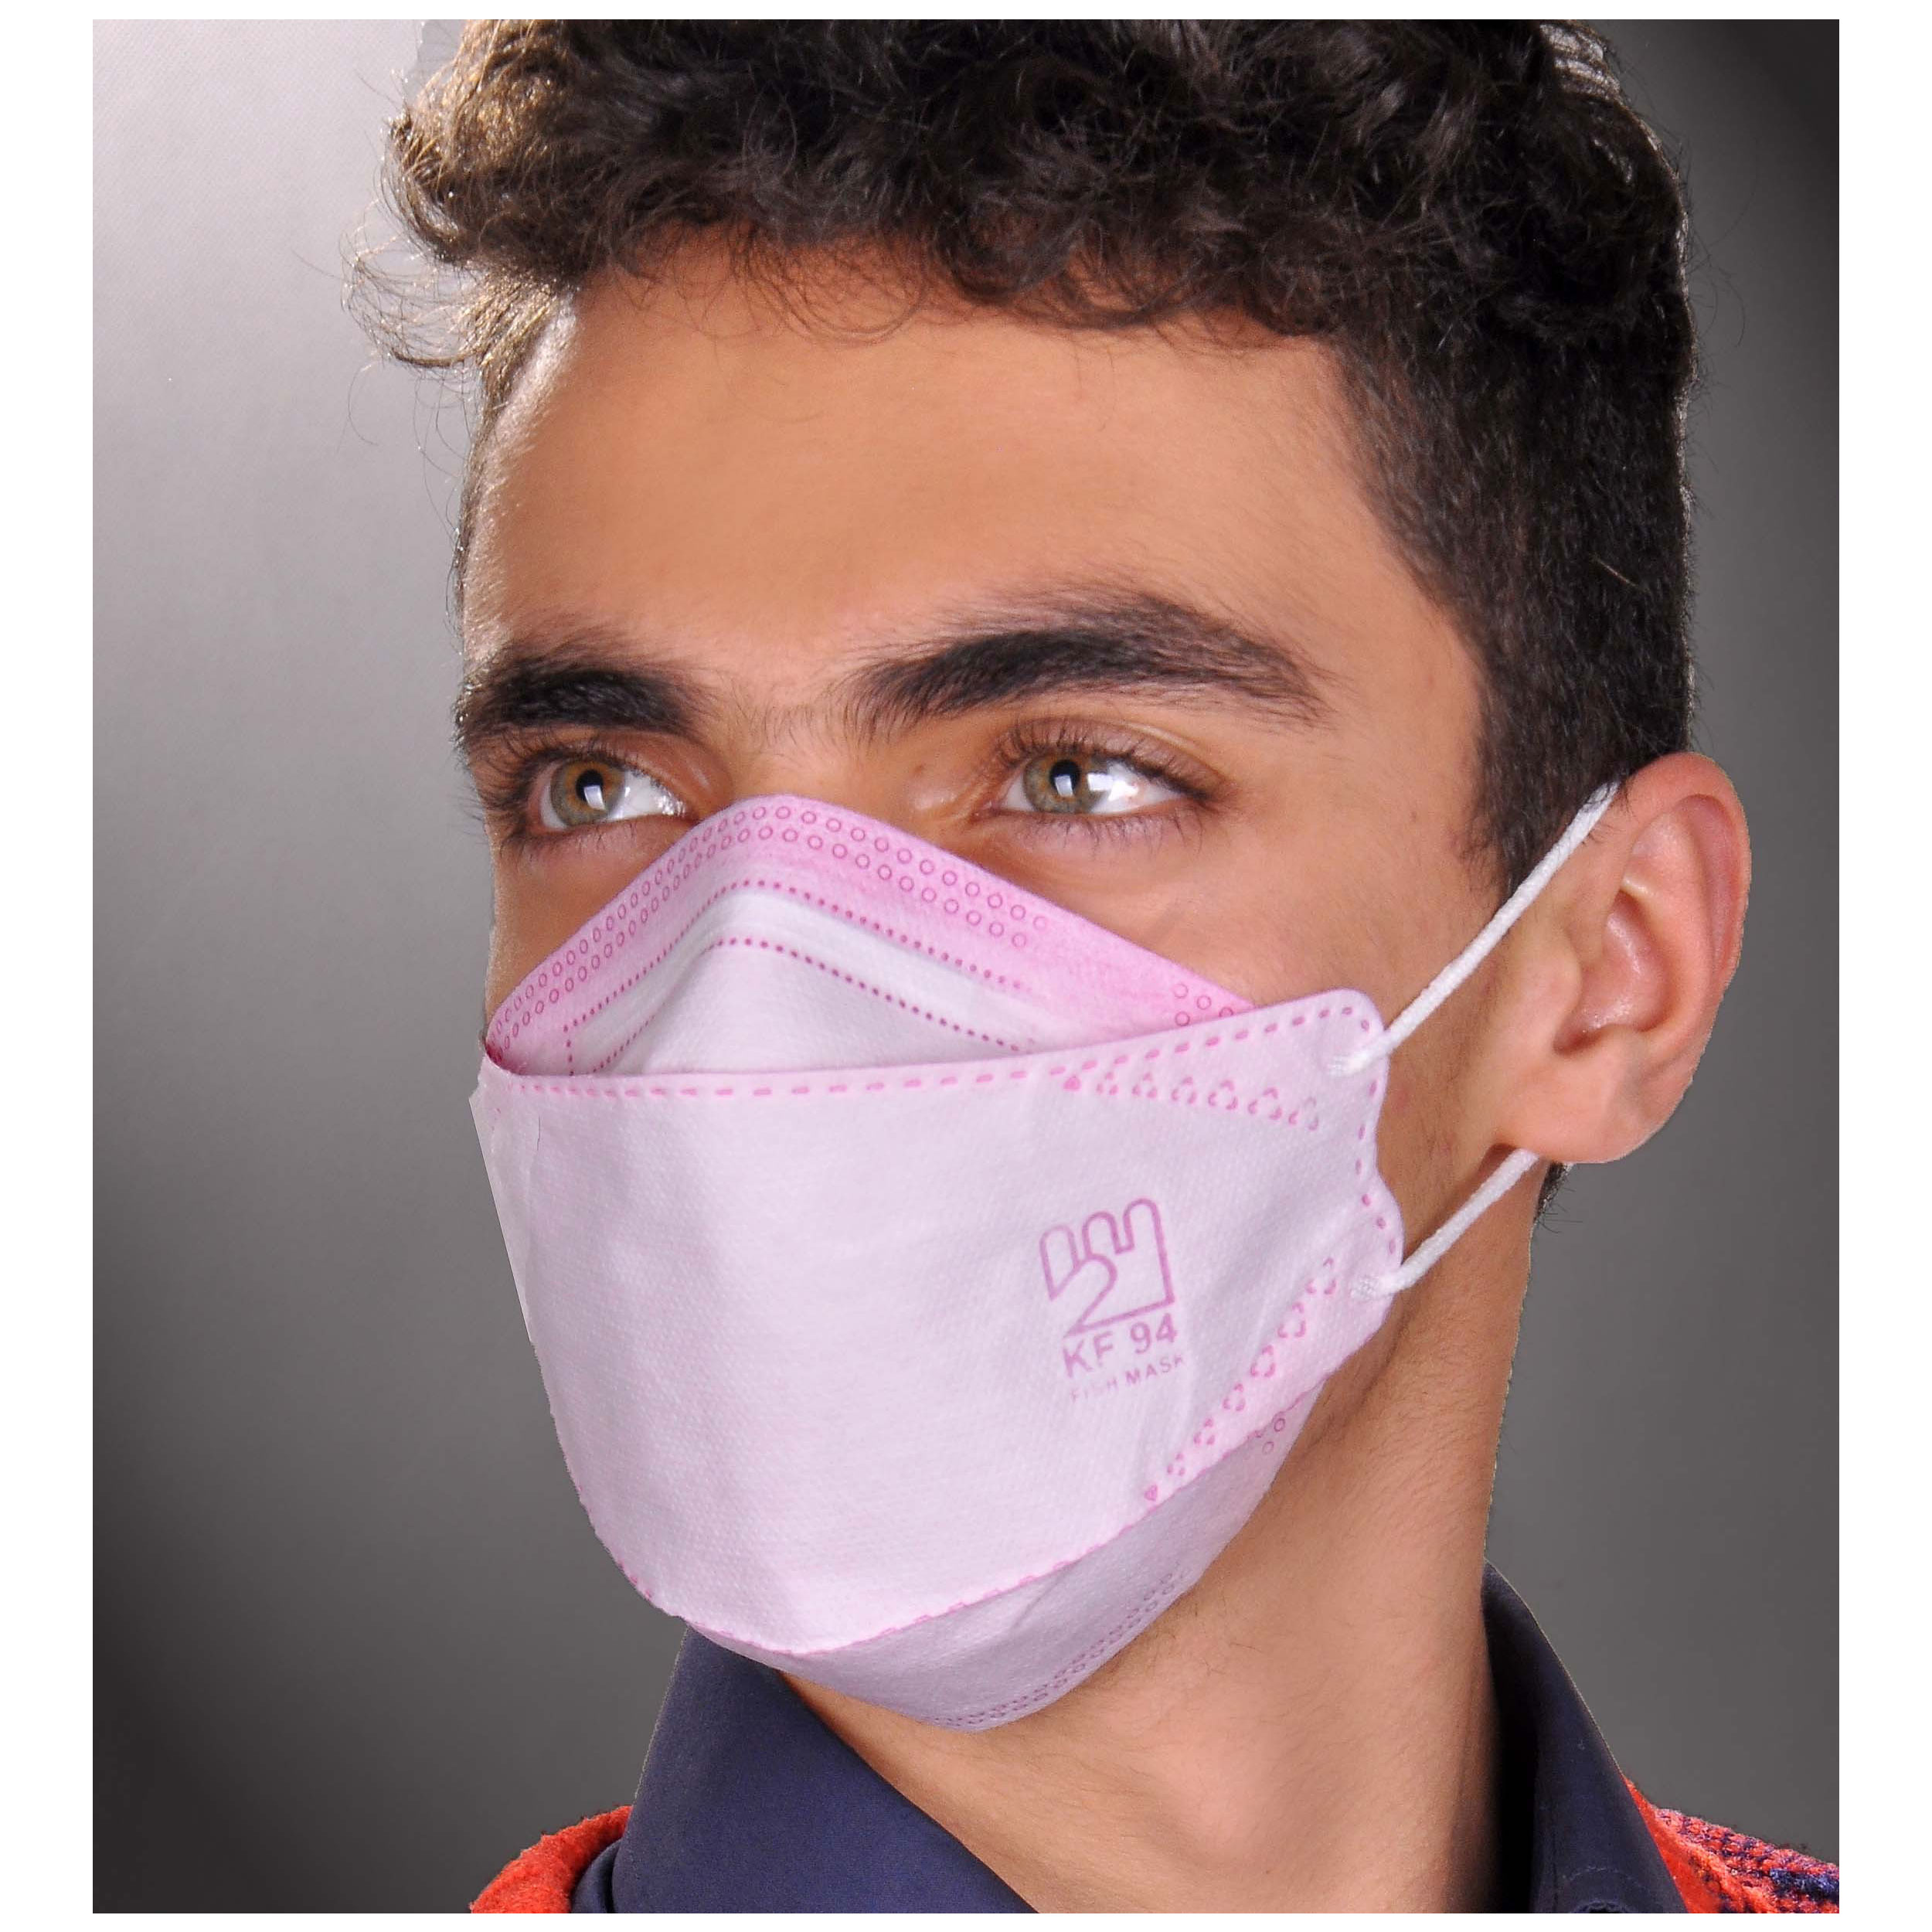  ماسک تنفسی دکترخوشرام مدل 3D-5color بسته 20 عددی